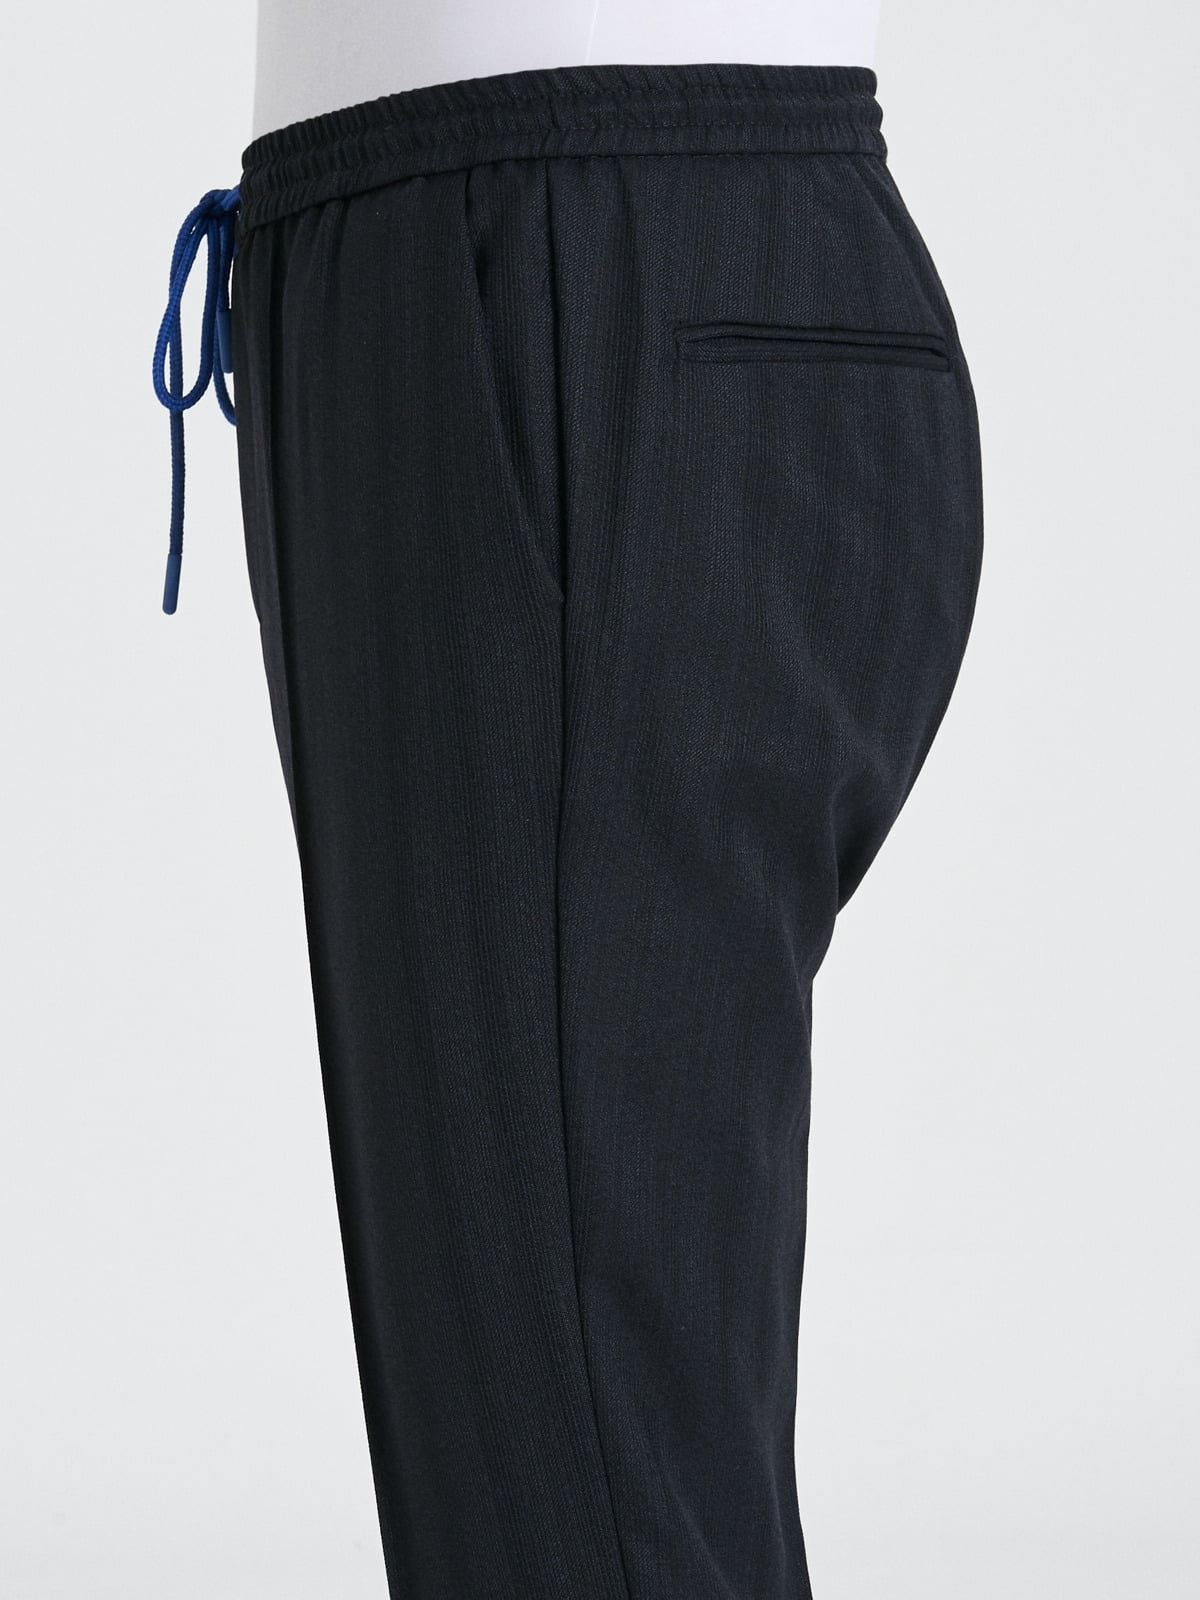 Lacivert ipli model çizgili pantolon.